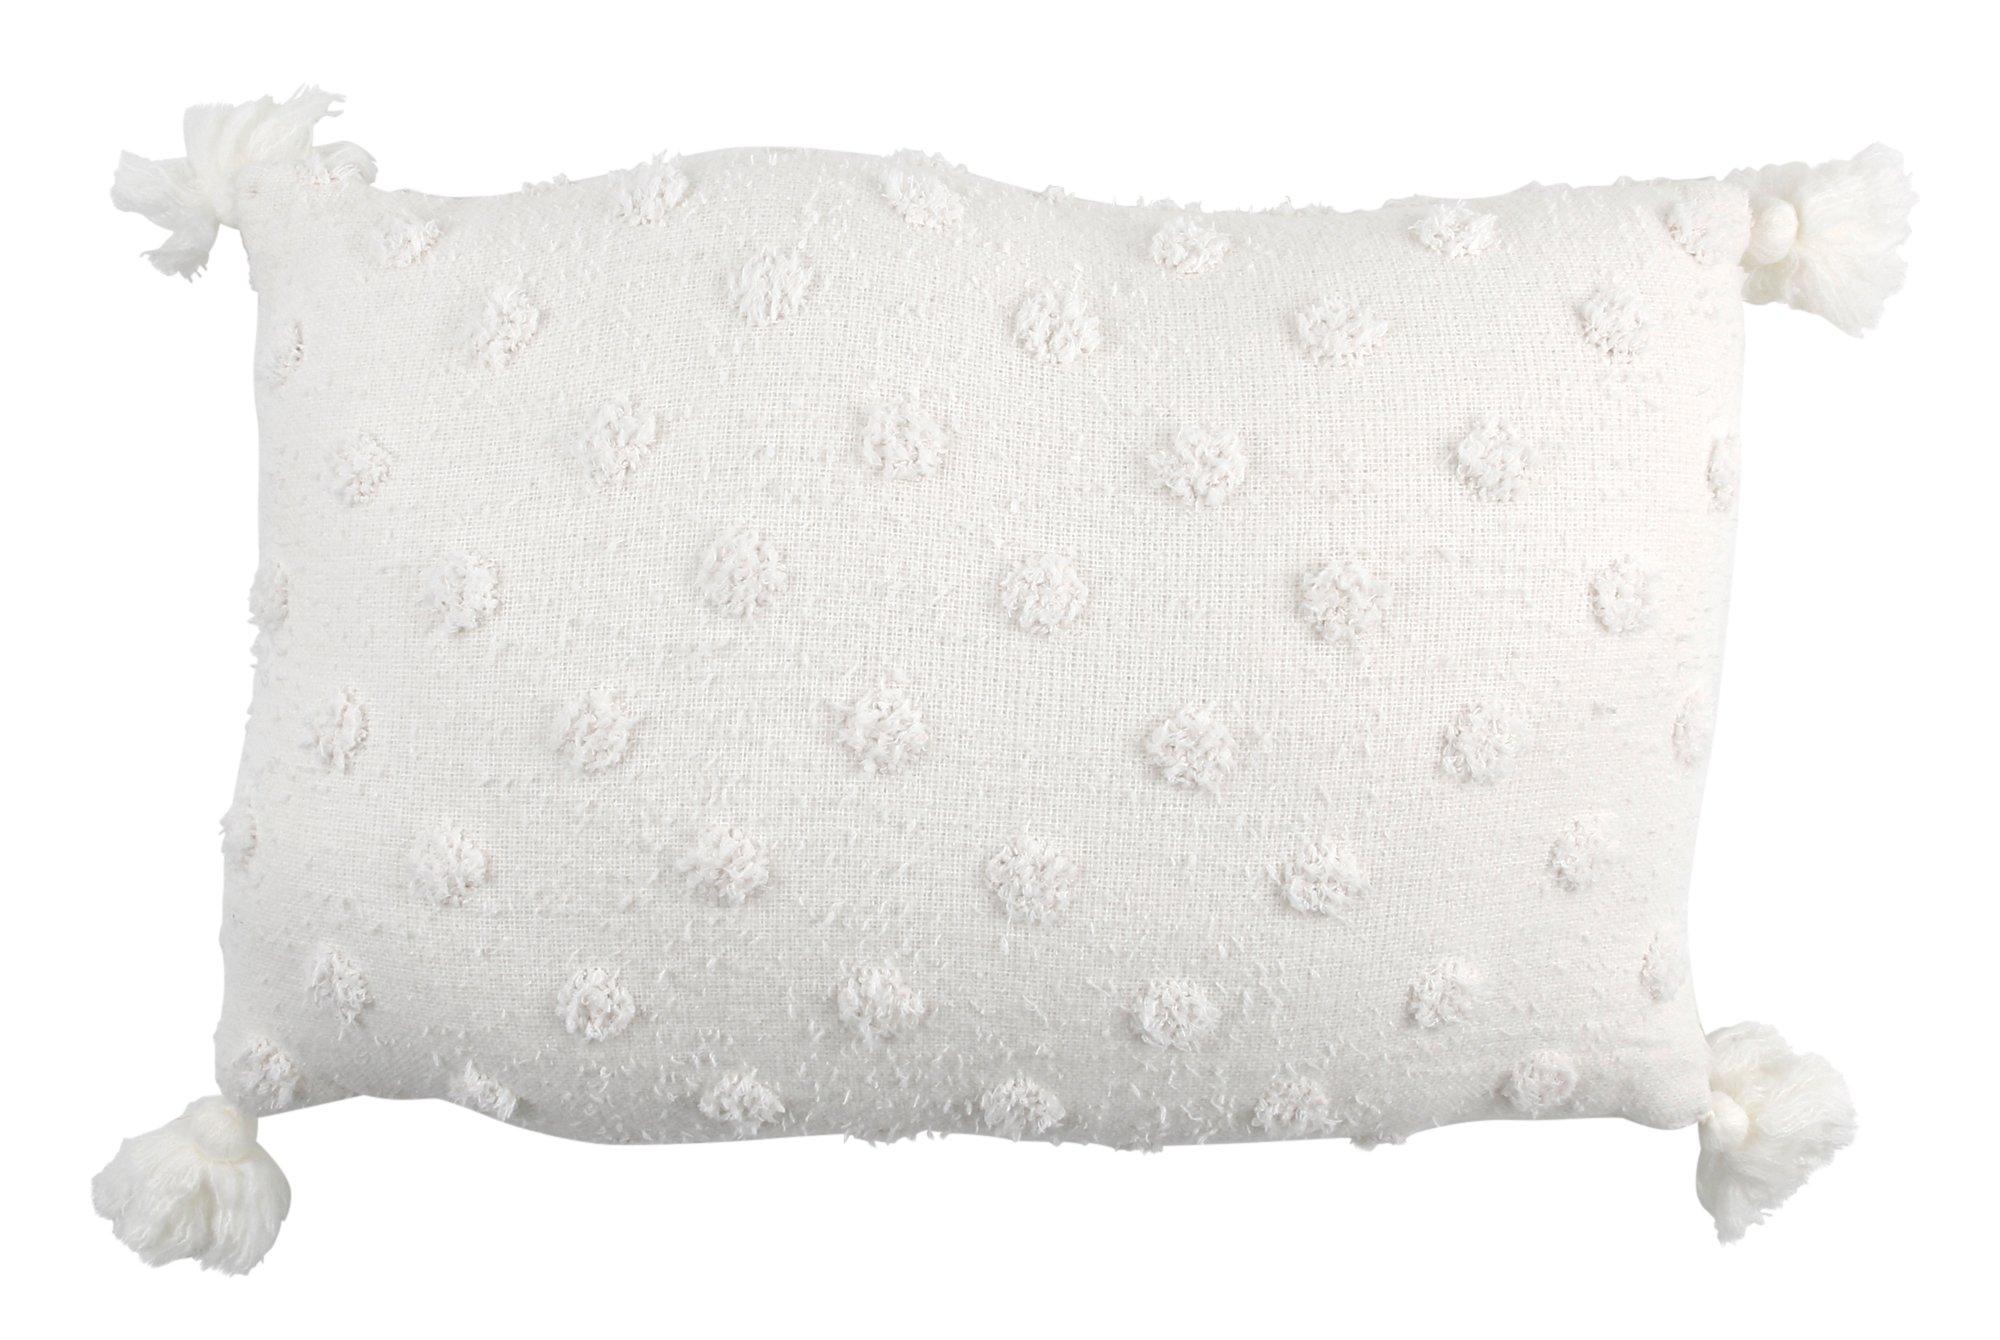 16x24 Decorative Throw Pillow - White